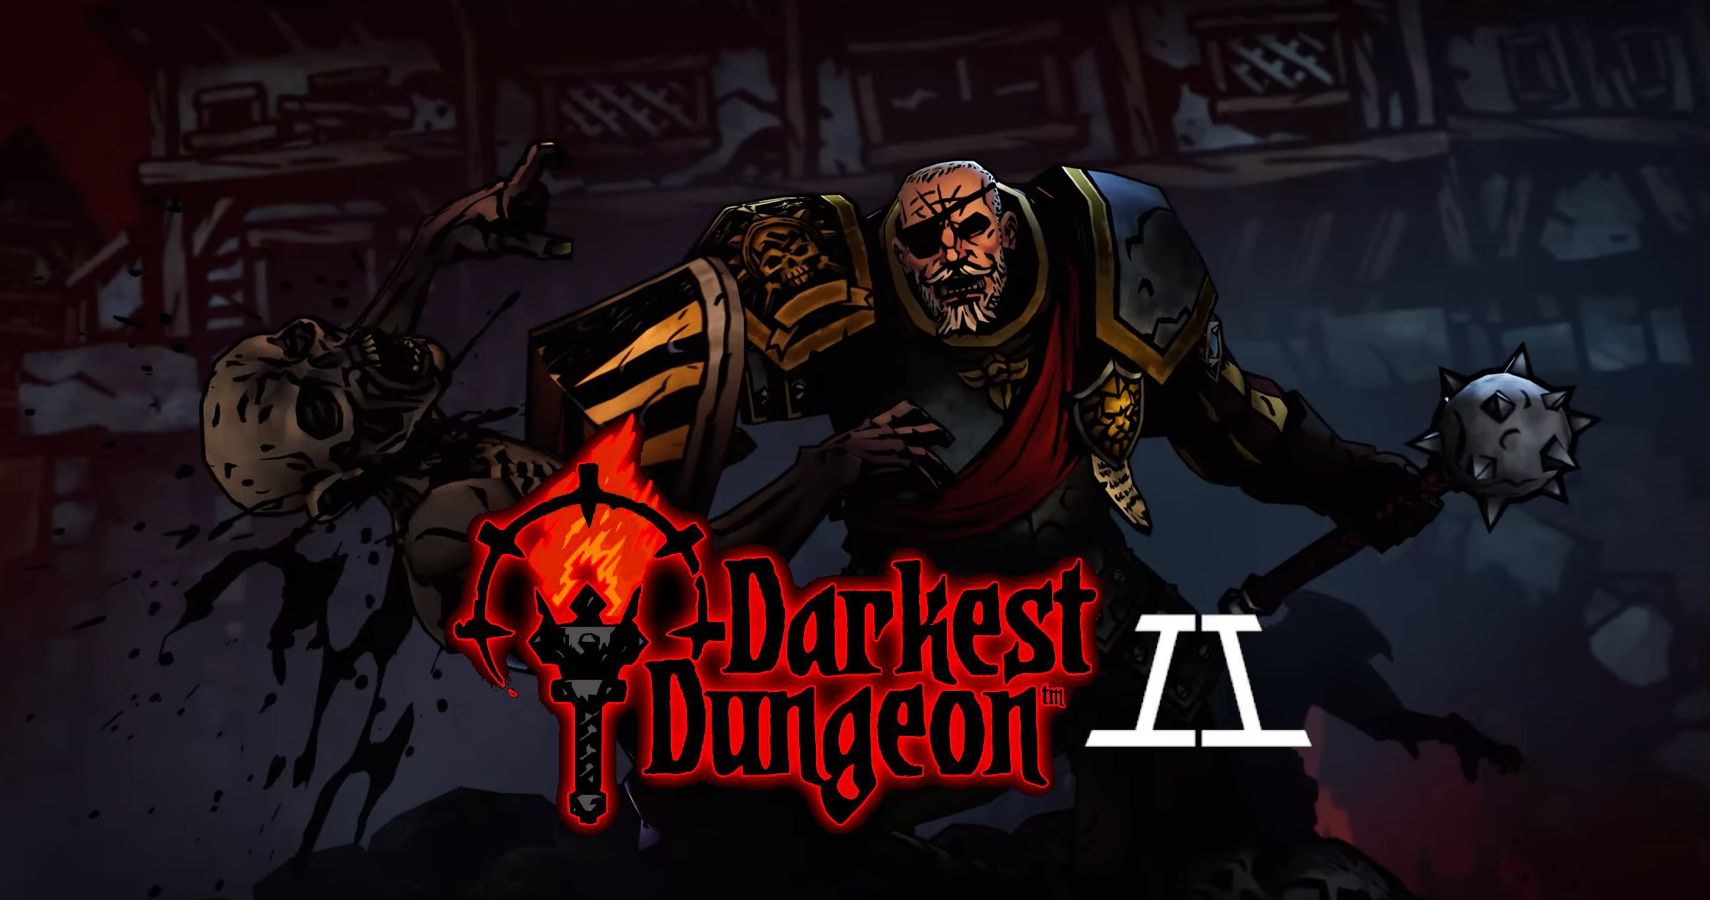 darkest dungeon 2 guide